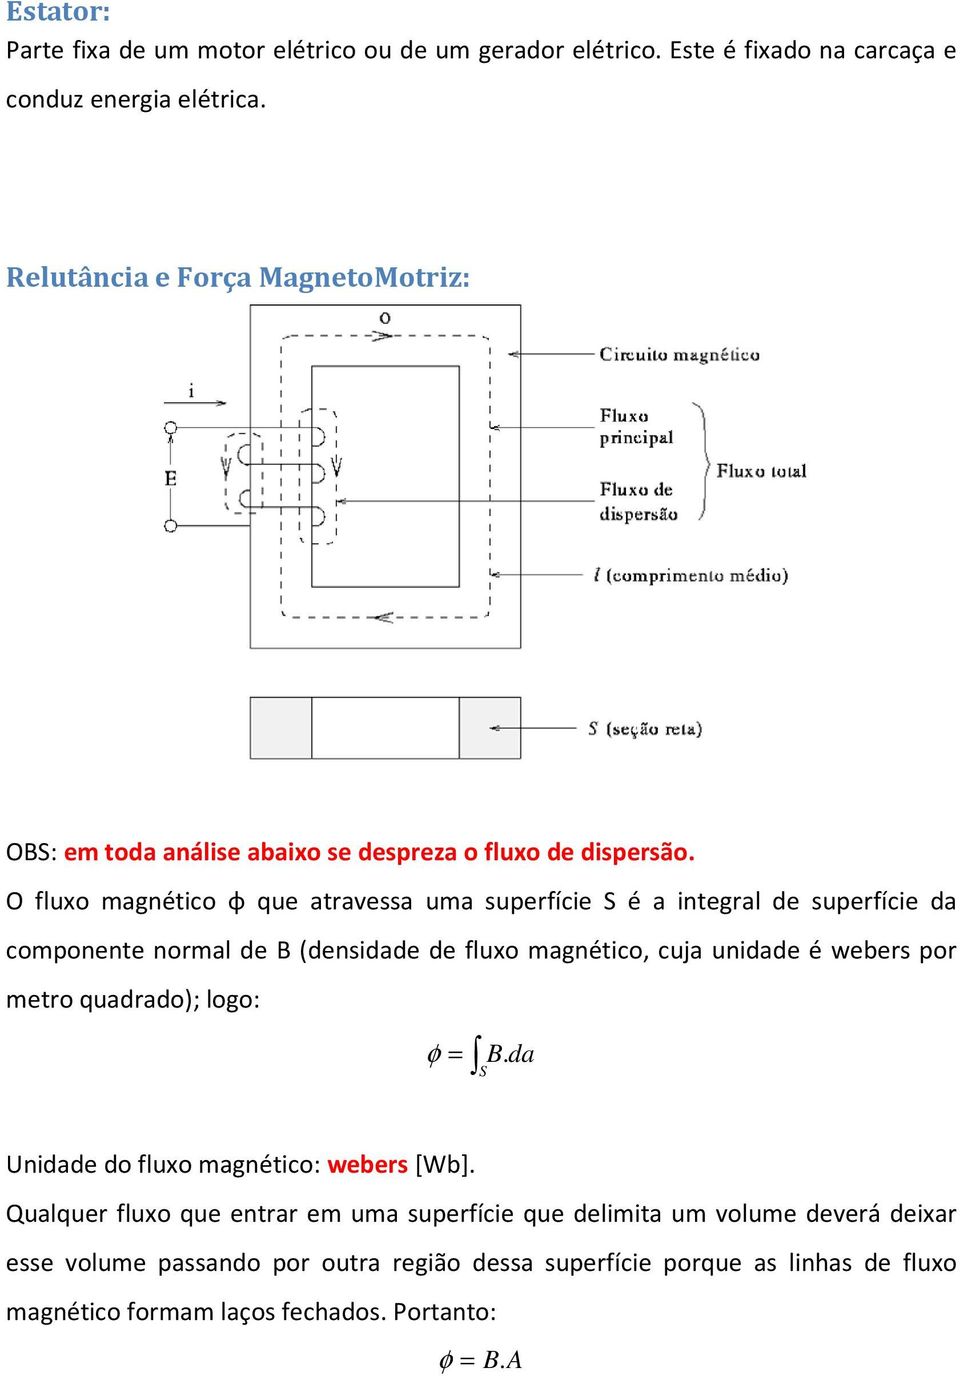 O fluxo magnético φ que atravessa uma superfície S é a integral de superfície da componente normal de B (densidade de fluxo magnético, cuja unidade é webers por metro